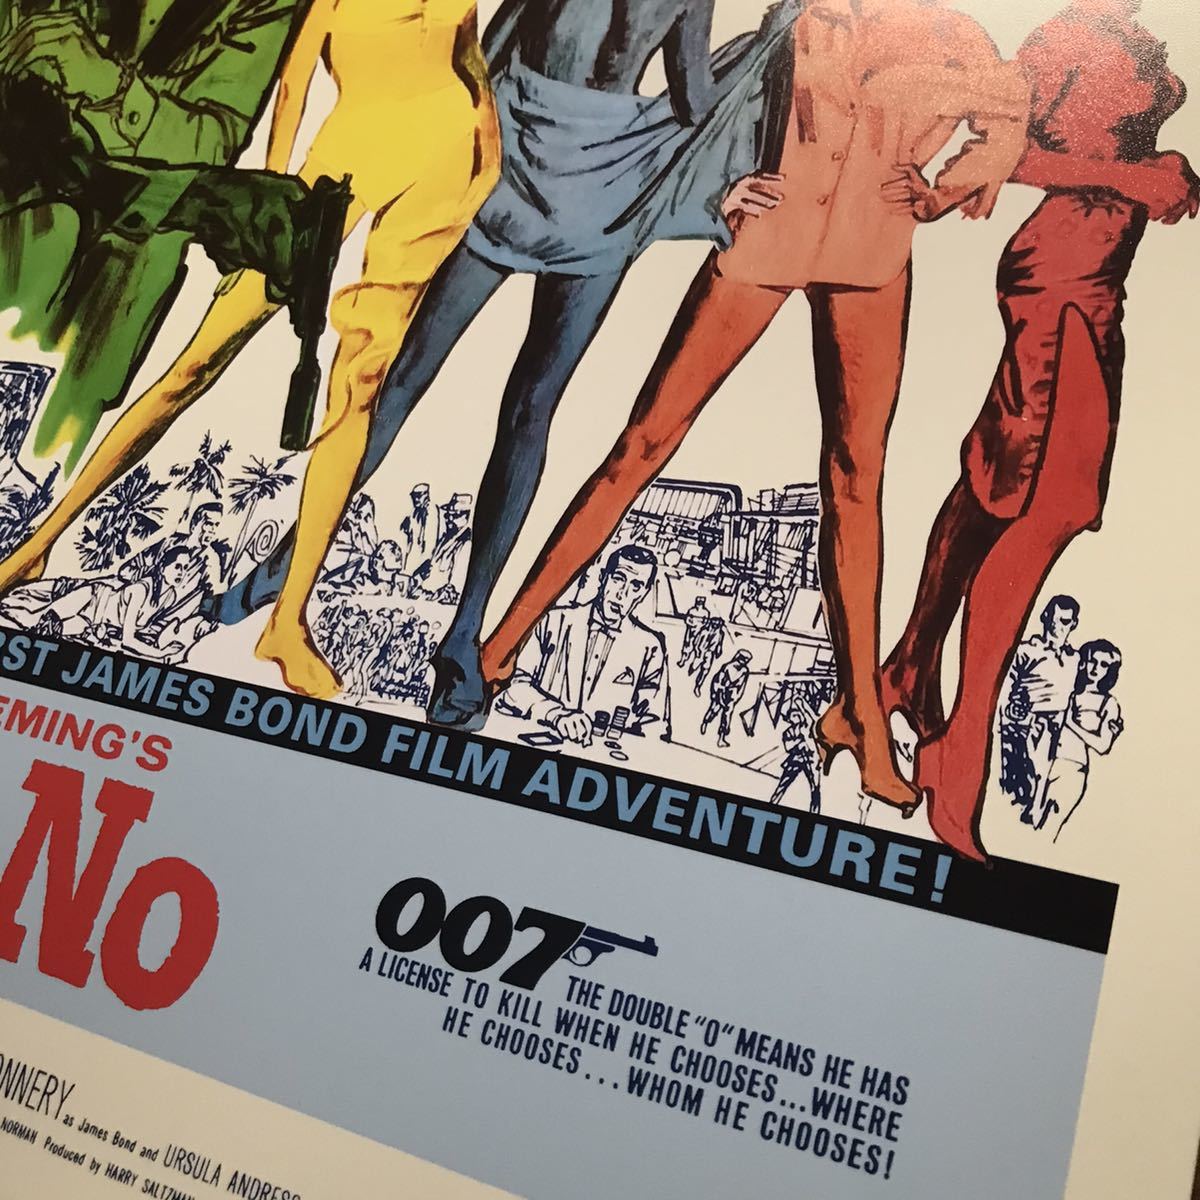 US版ポスター『007 ドクター・ノオ』（Dr. No）1962年 『007は殺しの番号』 ジェームズ・ボンド/ショーン・コネリー/イアン・フレミング